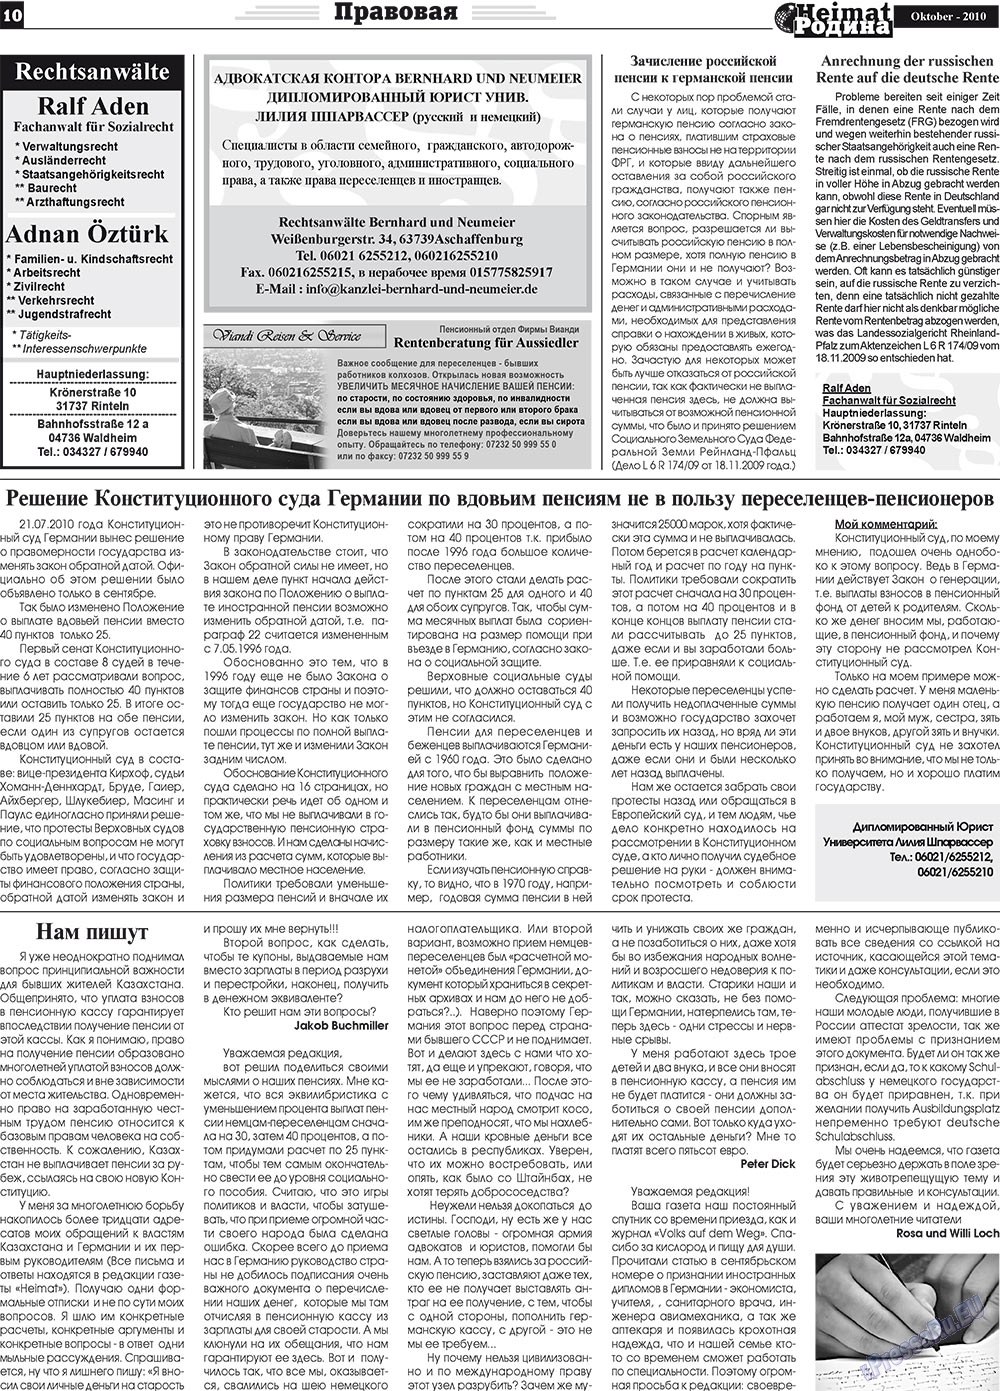 Heimat-Родина (газета). 2010 год, номер 10, стр. 10